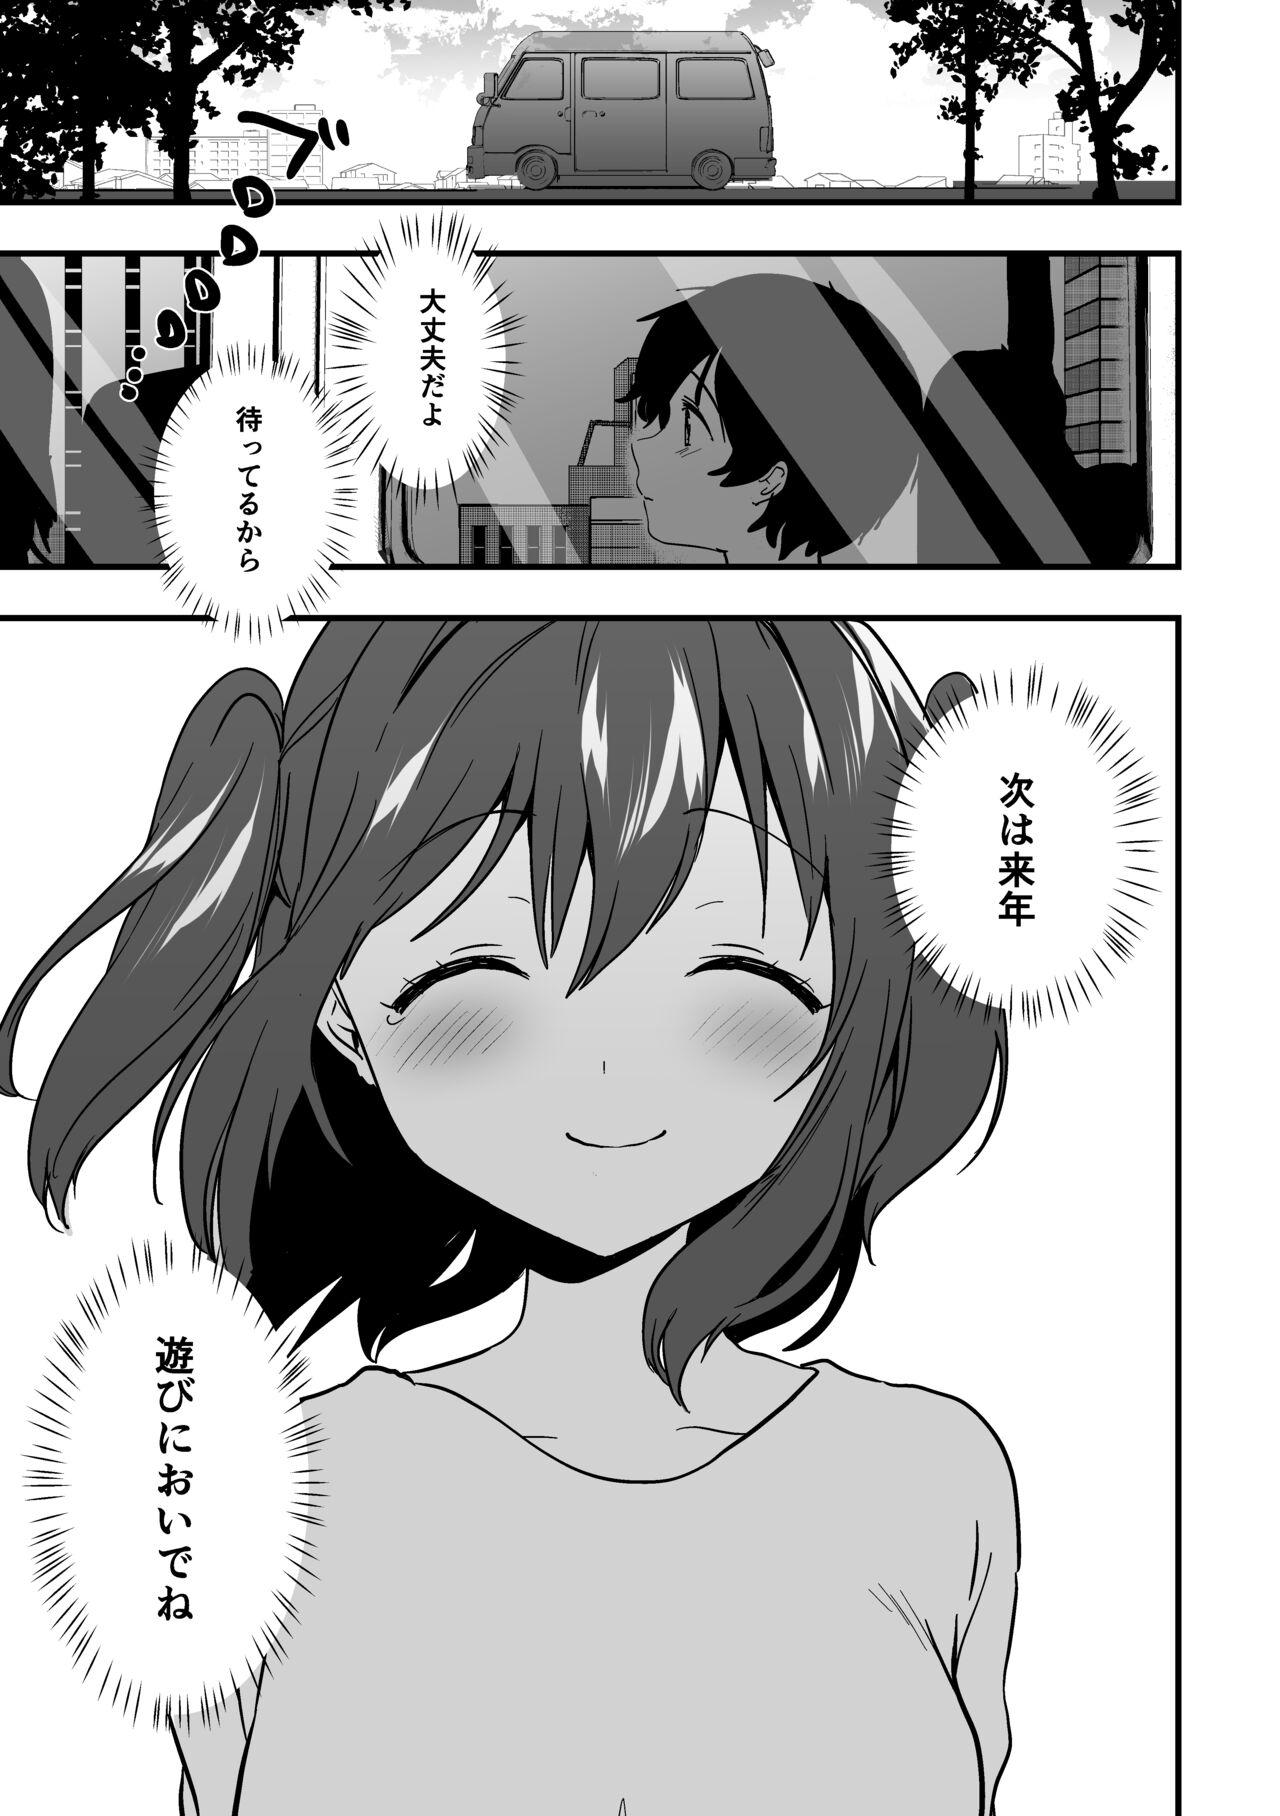 [Kazepana] Ruby-chan to shota no echi-echi 10 page manga (Love Live! Sunshine!!) 9